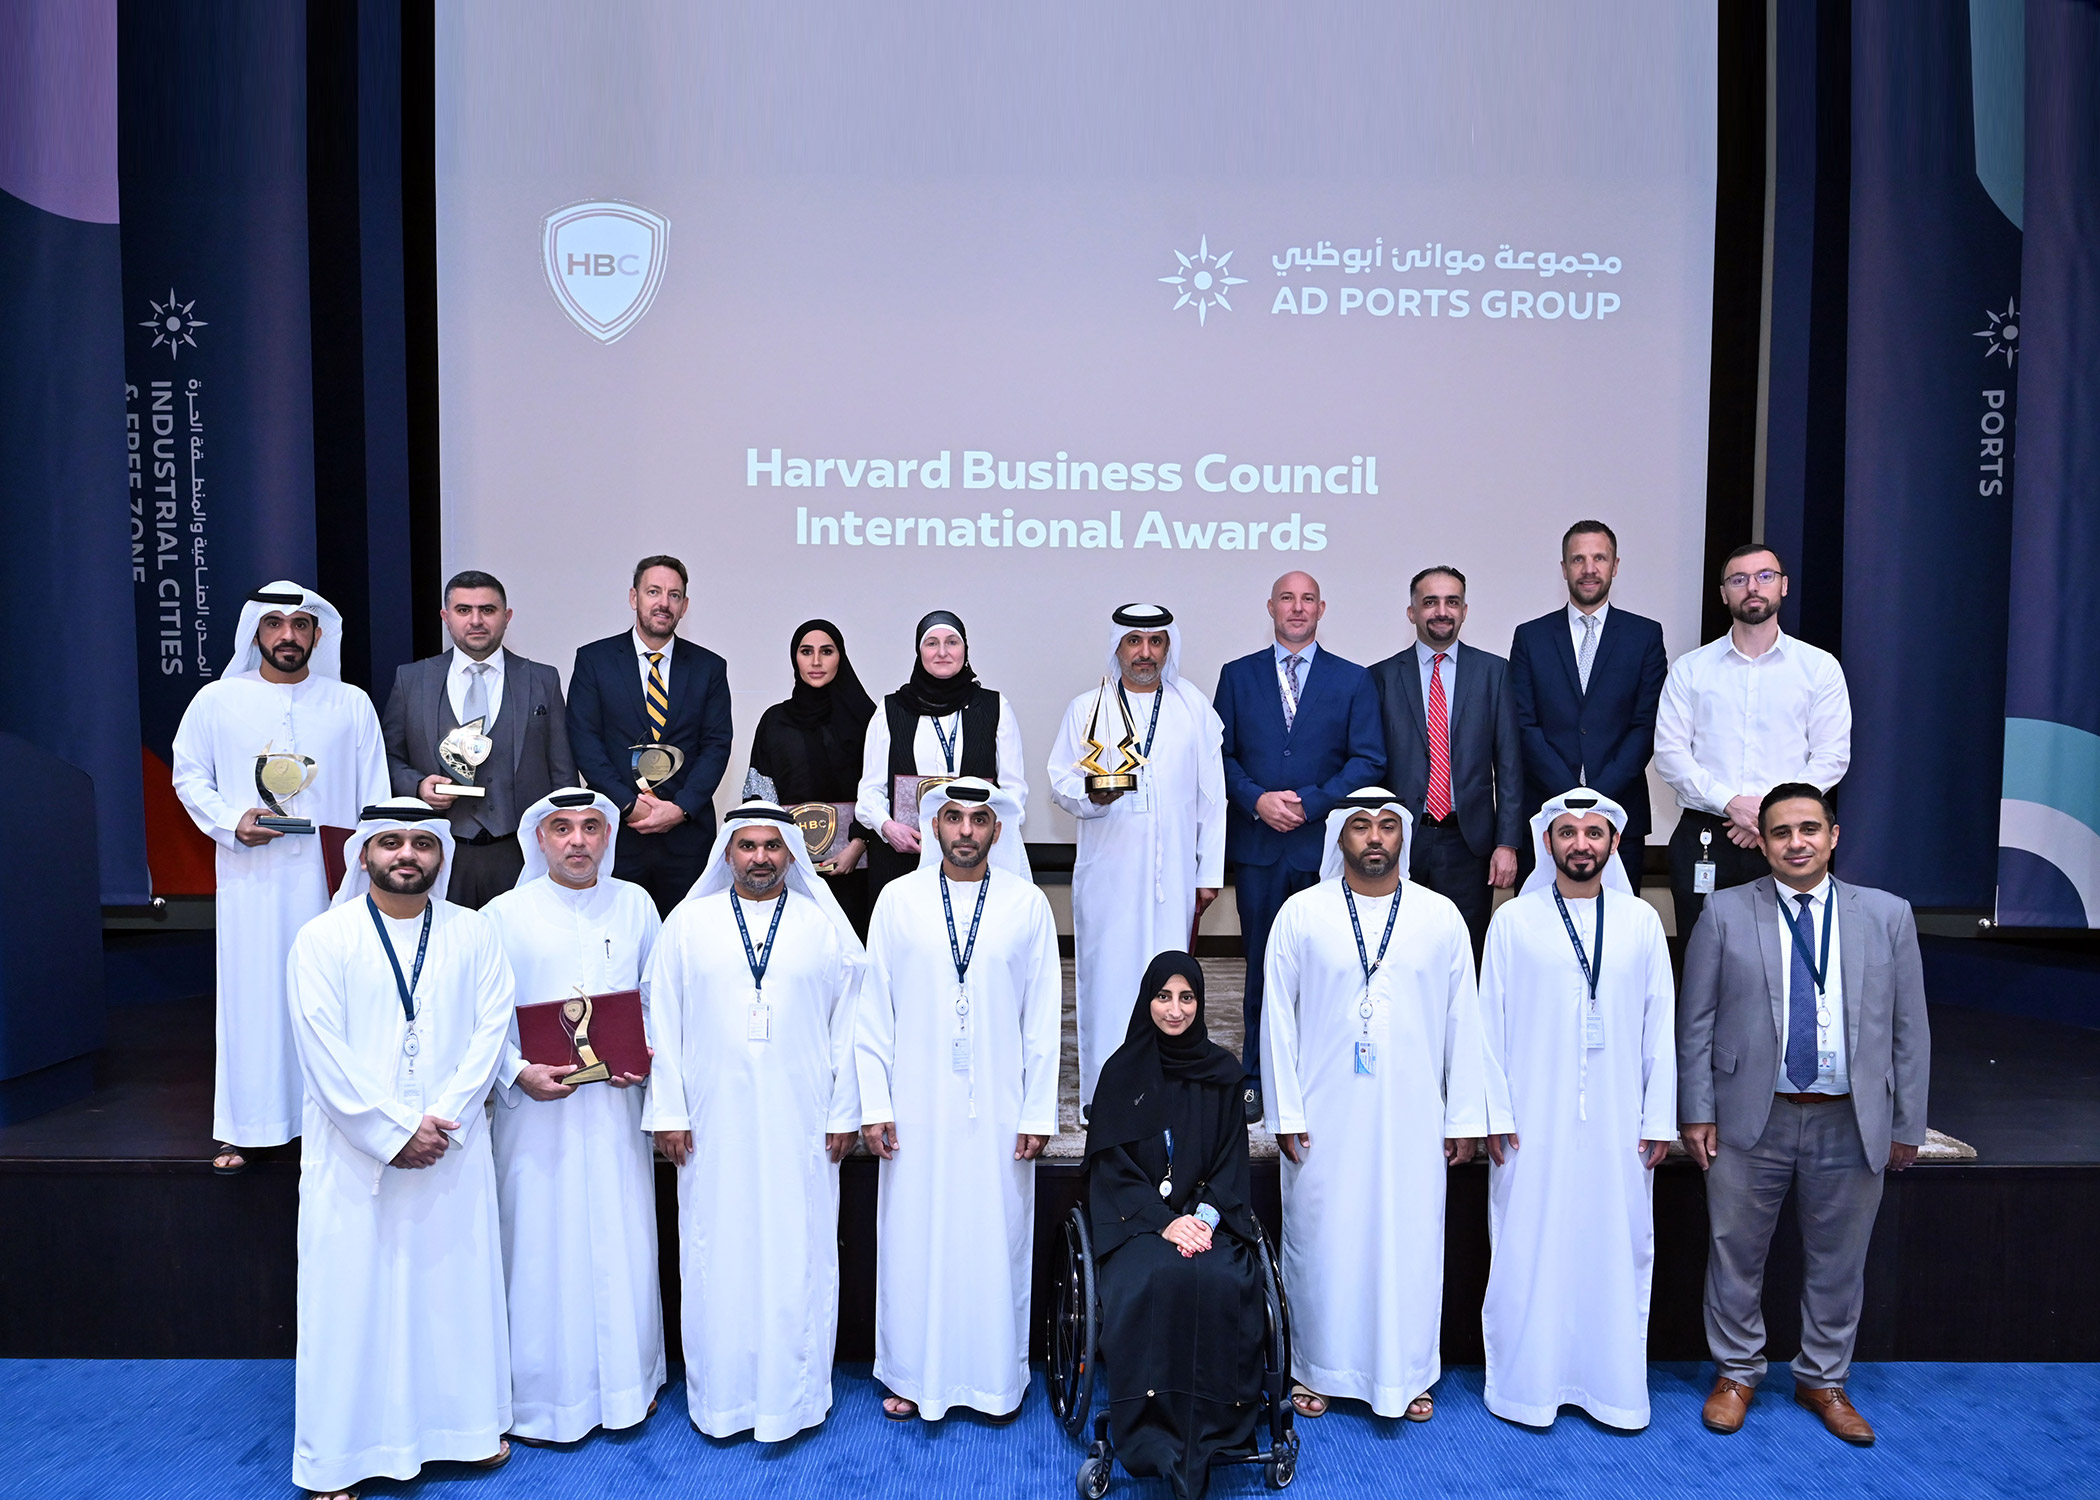 مجموعة موانئ أبوظبي تتصدر الفائزين بسبع جوائز مرموقة من جوائز مجلس هارفارد العالمية للأعمال لعام 2022